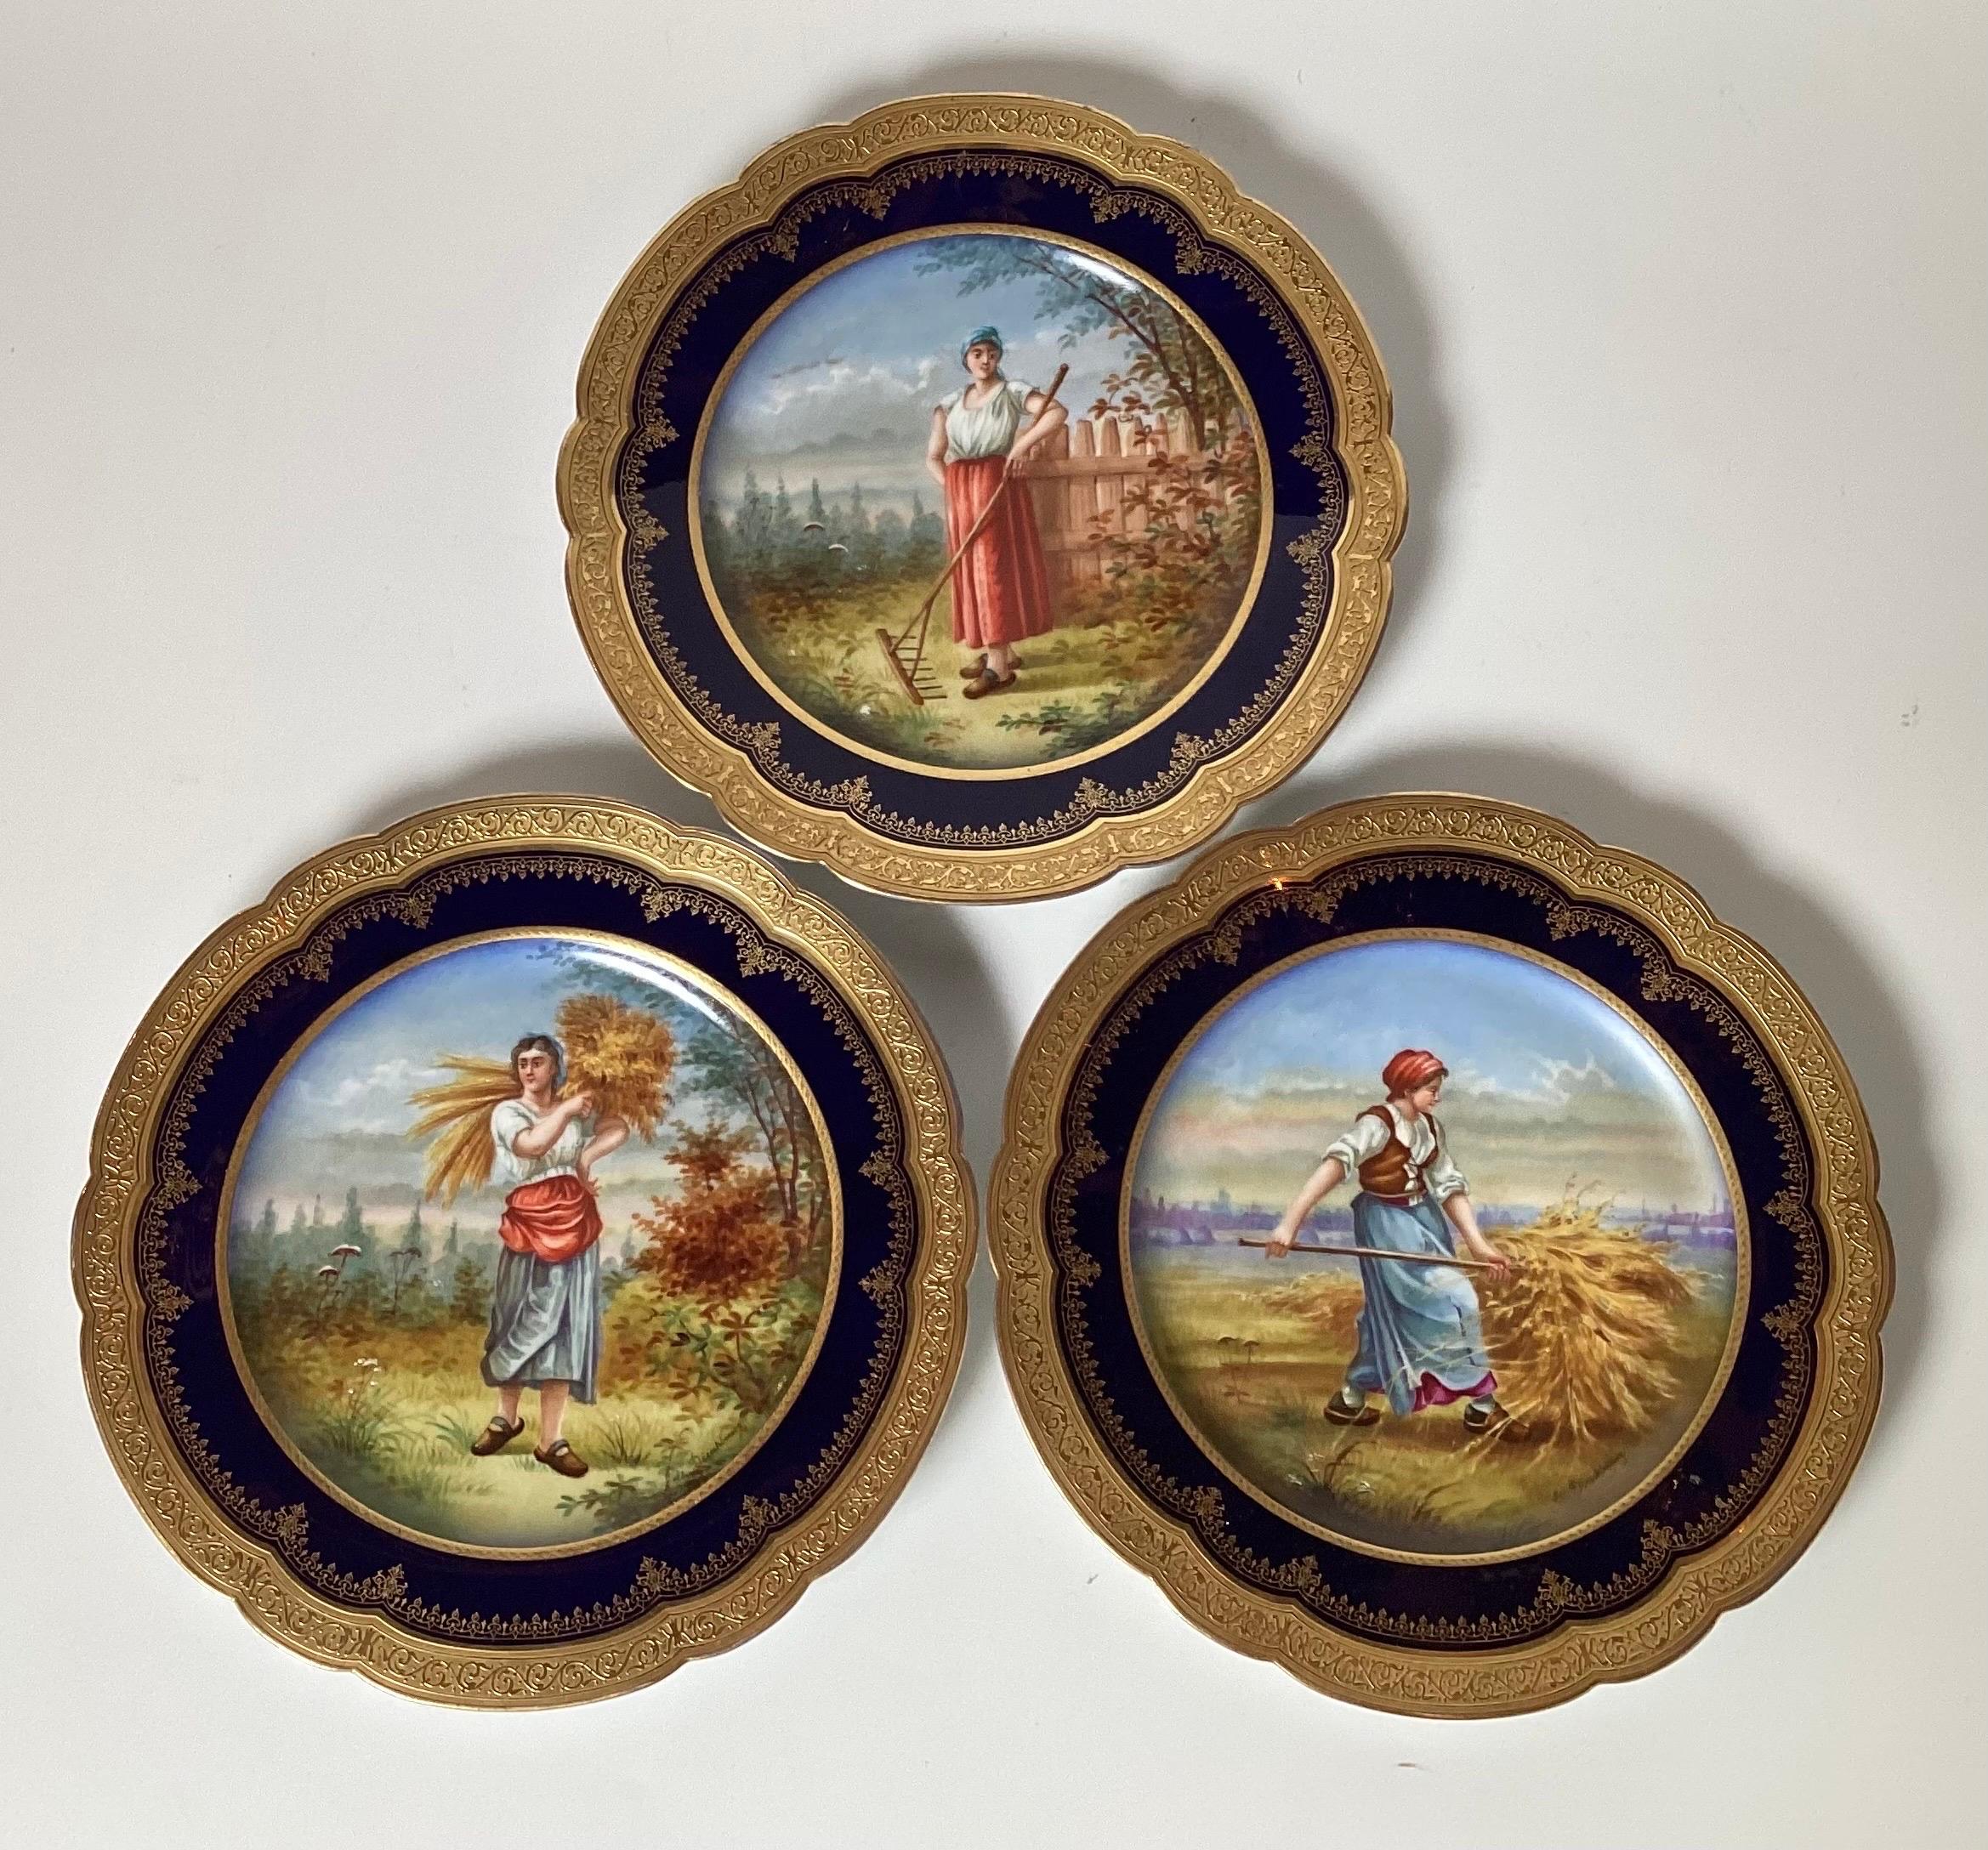 Trois assiettes de cabinet en porcelaine dorée et rehaussée de Sèvres, milieu du 19e siècle. Bords festonnés, rehaussés de dorure et bordés de cobalt, chacun avec des fermières au centre et signé 